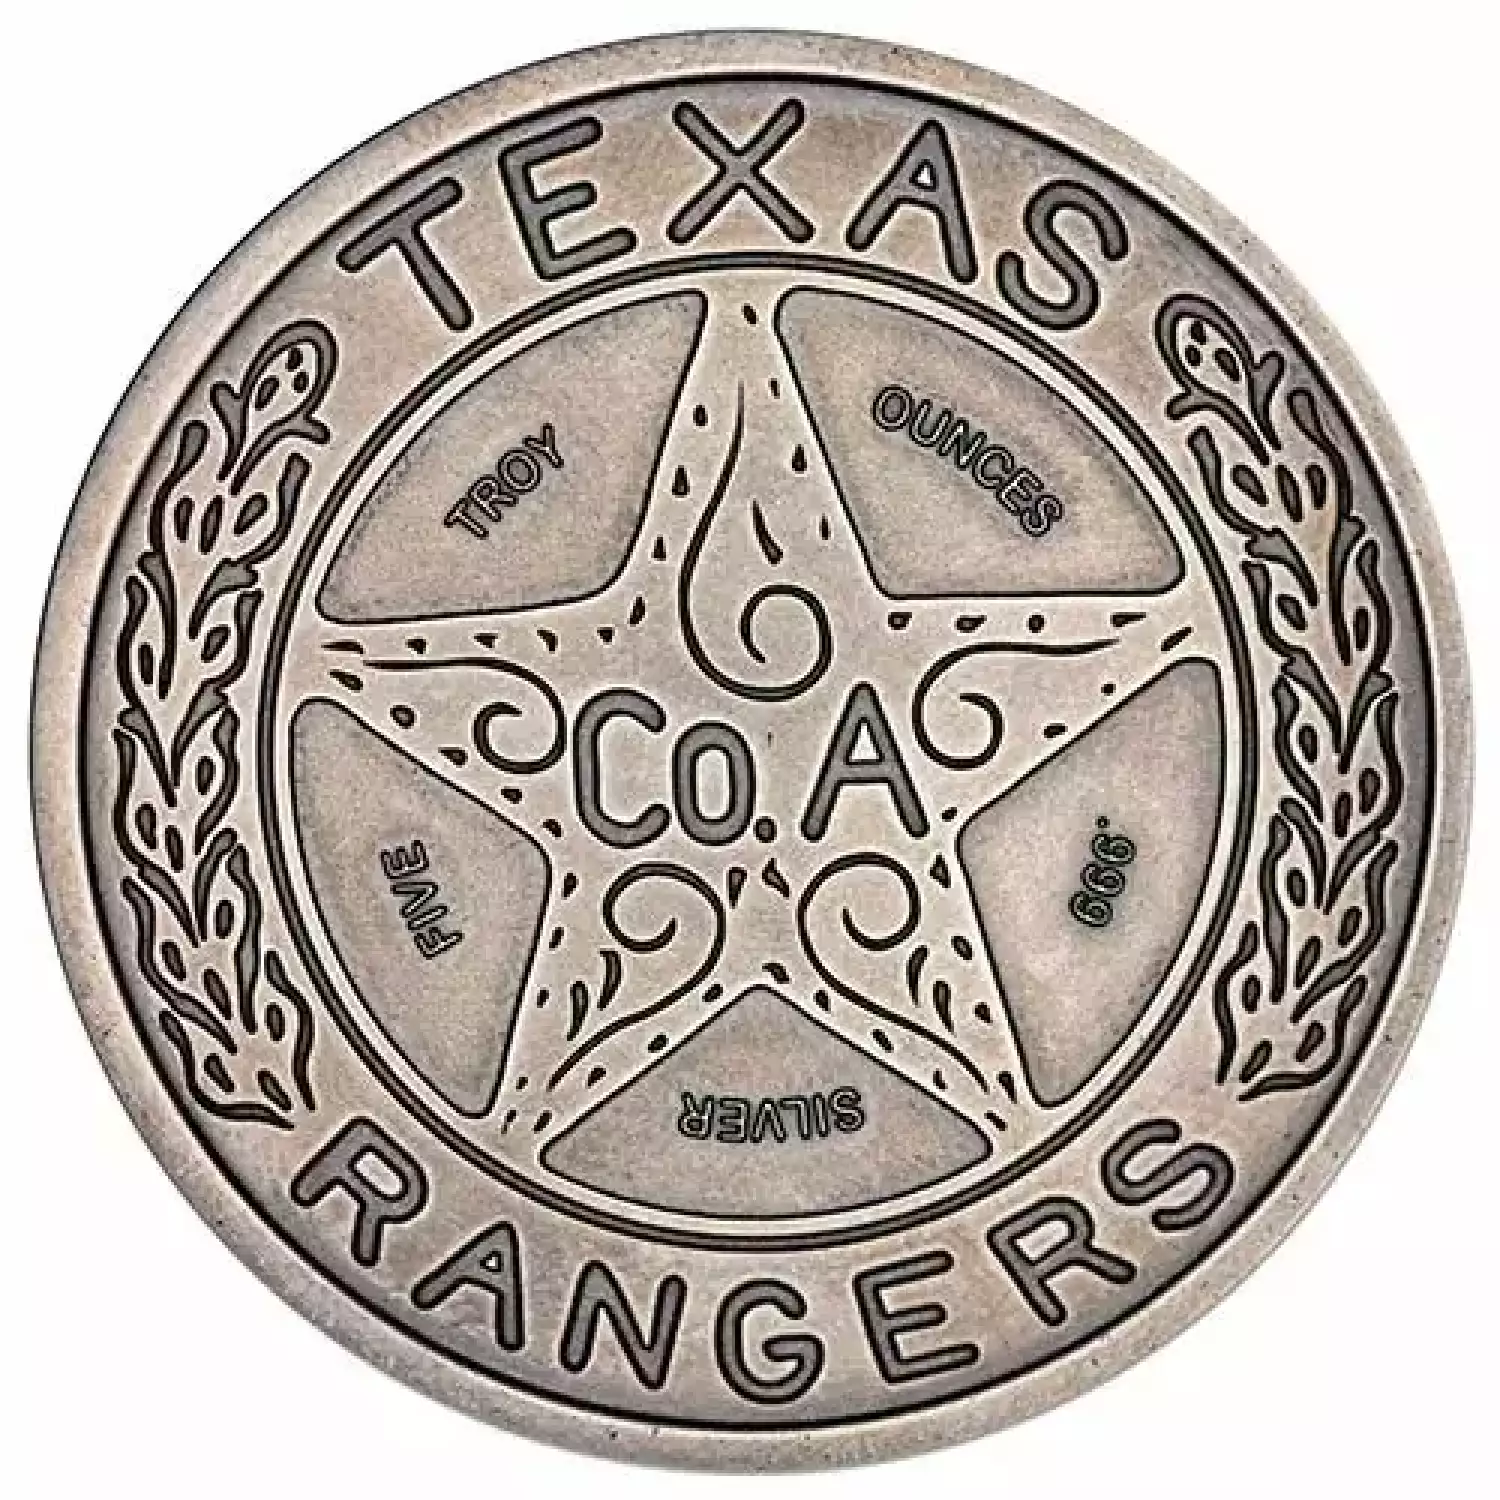 5 oz Antique Texas Ranger Wagon Wheel Badge Silver Round